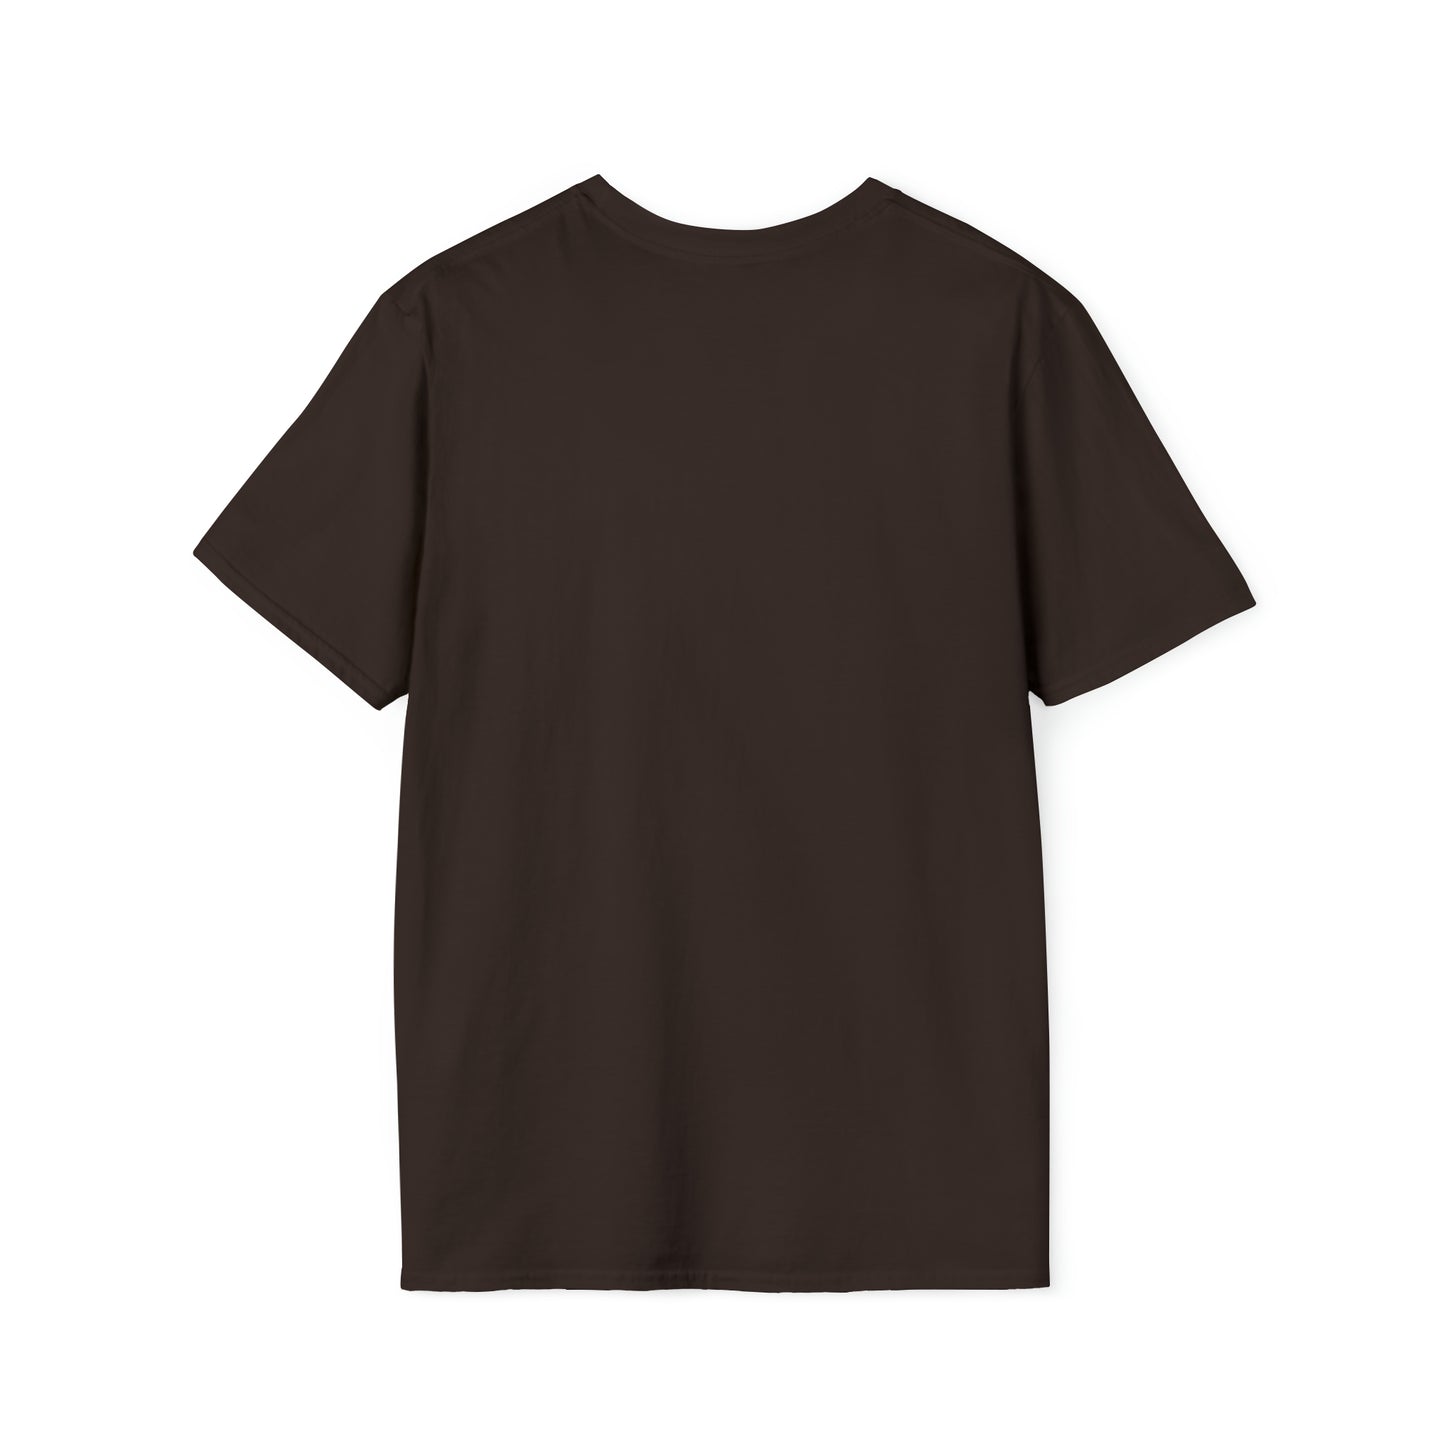 ANACORTES GATEWAY 2 Unisex Softstyle T-Shirt